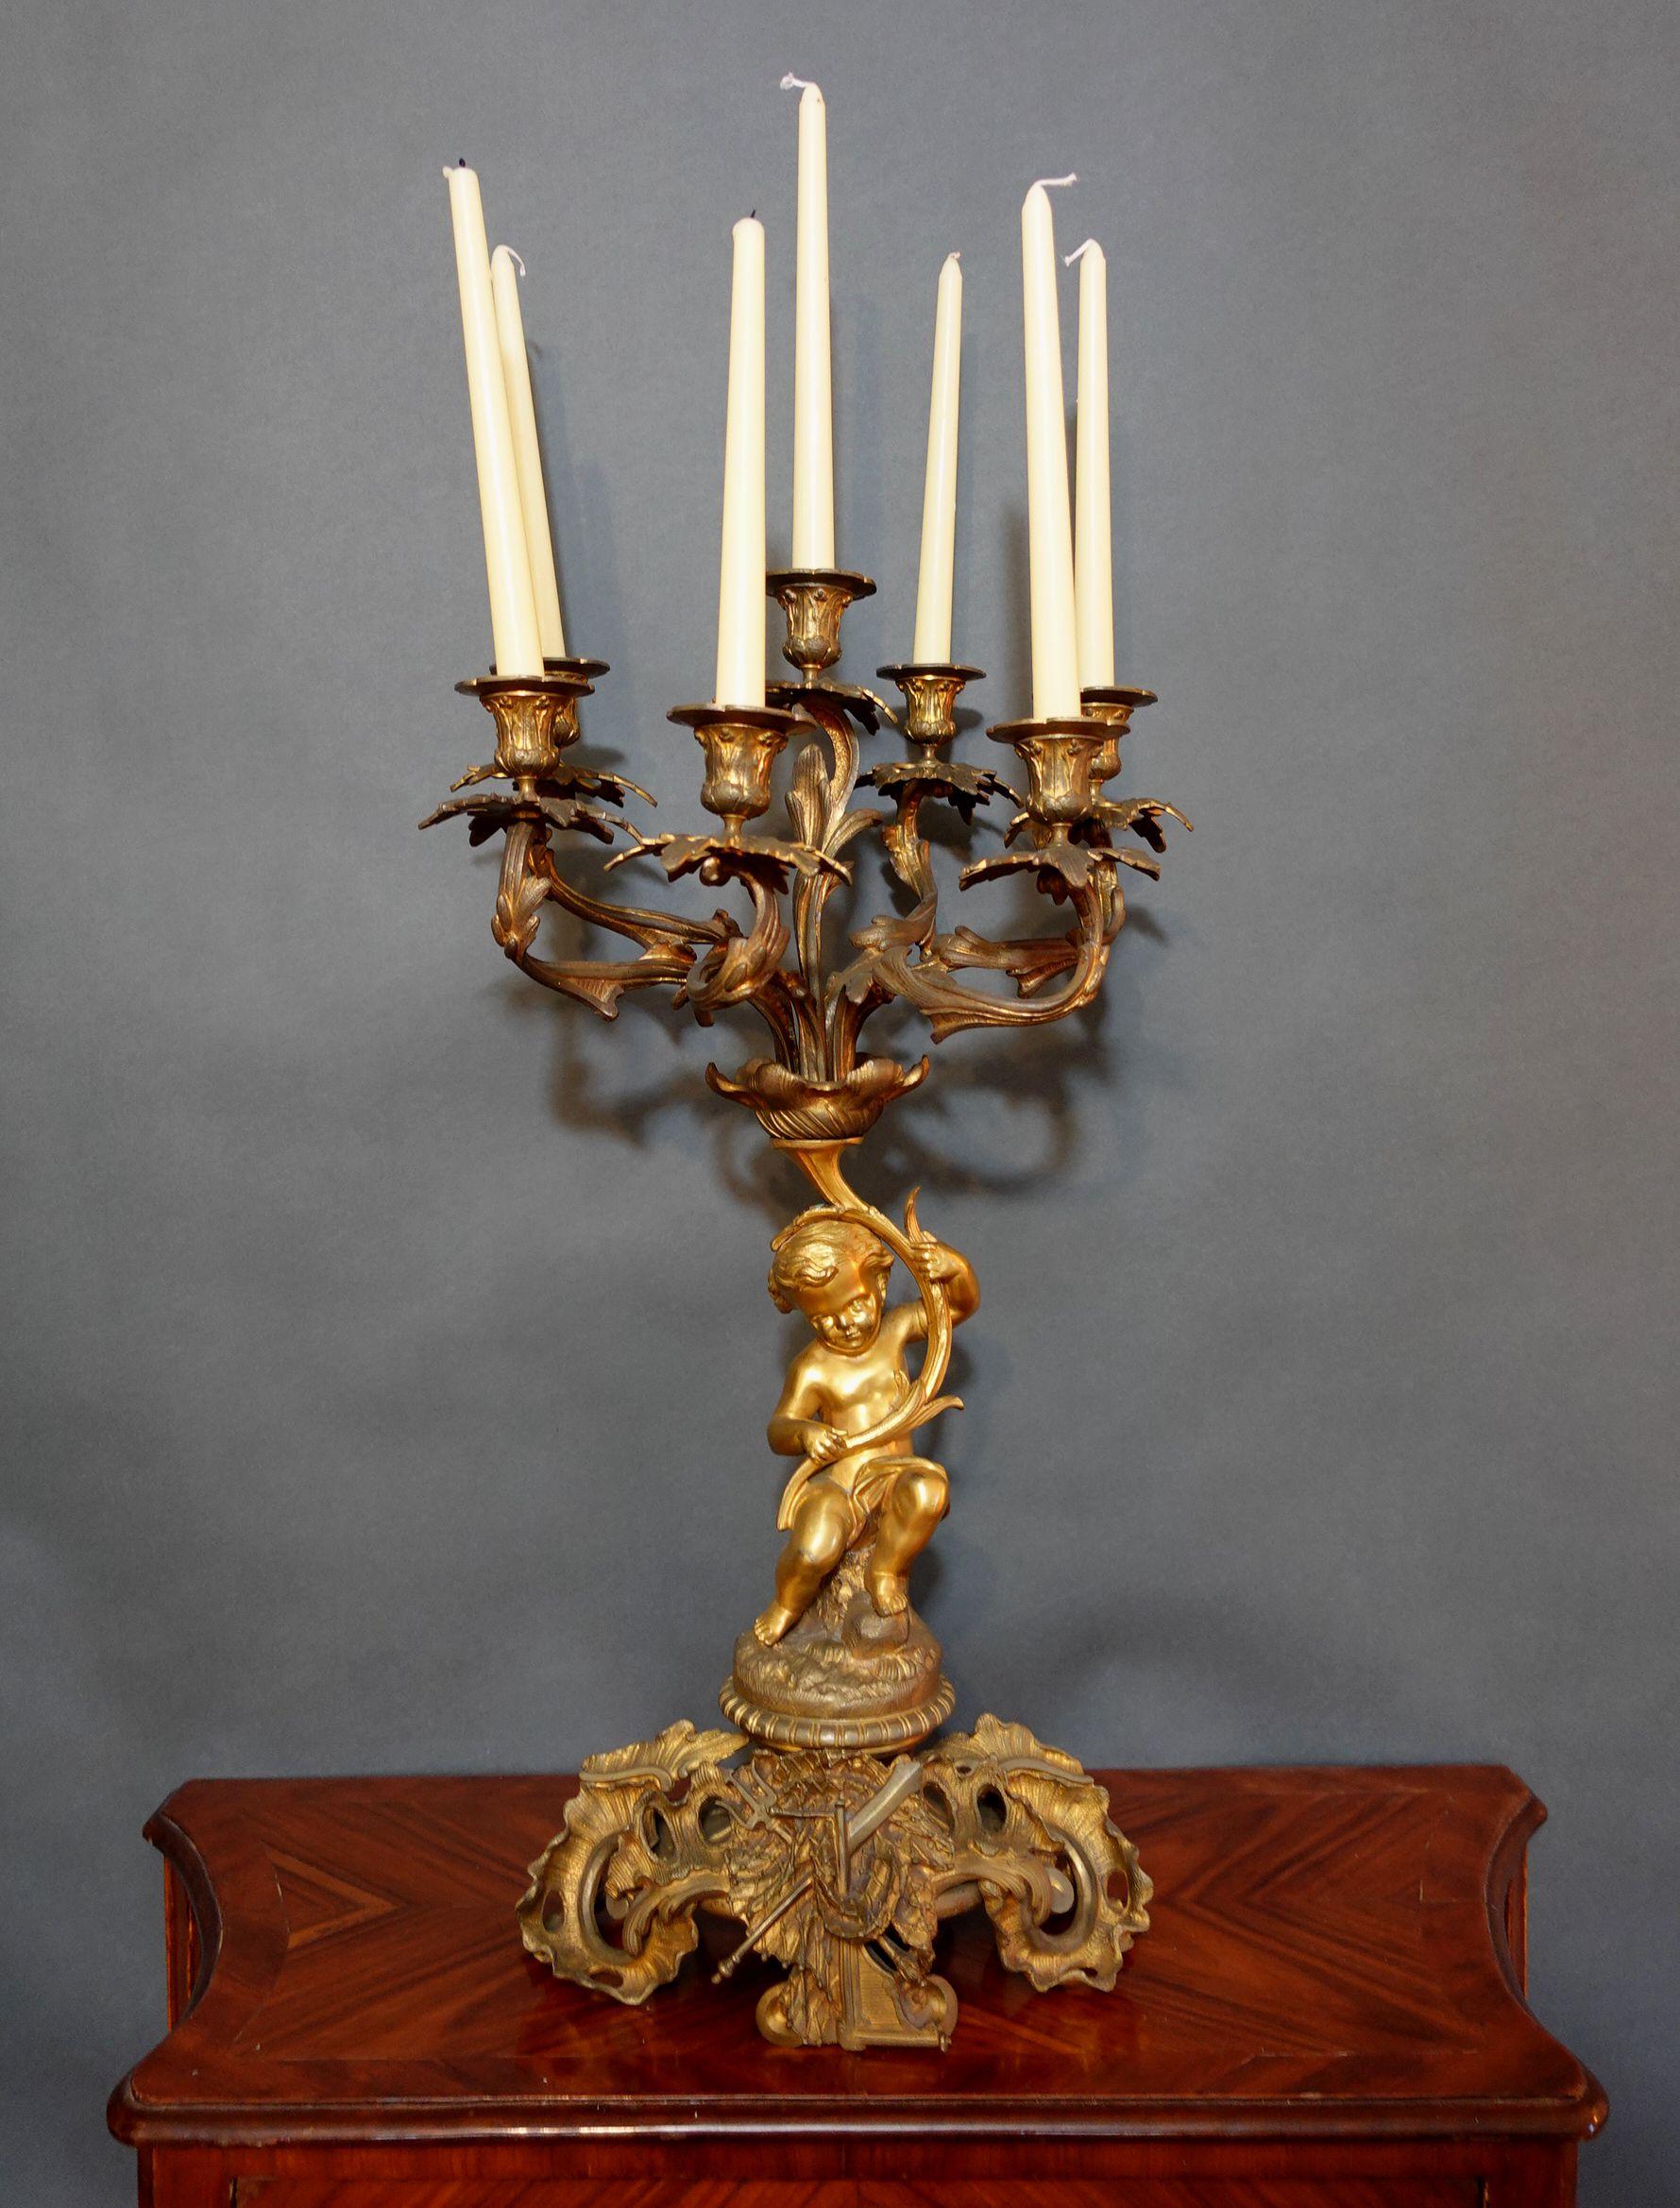 Großer und schwerer französischer Kerzenleuchter im Louis XV-Stil aus Bronze mit komplizierter skulpturaler Form, die sich durch das gesamte Stück zieht.
Spezieller Vergoldungseffekt auf dem Körper der Putte, um diese Figur sehr sichtbar zu machen